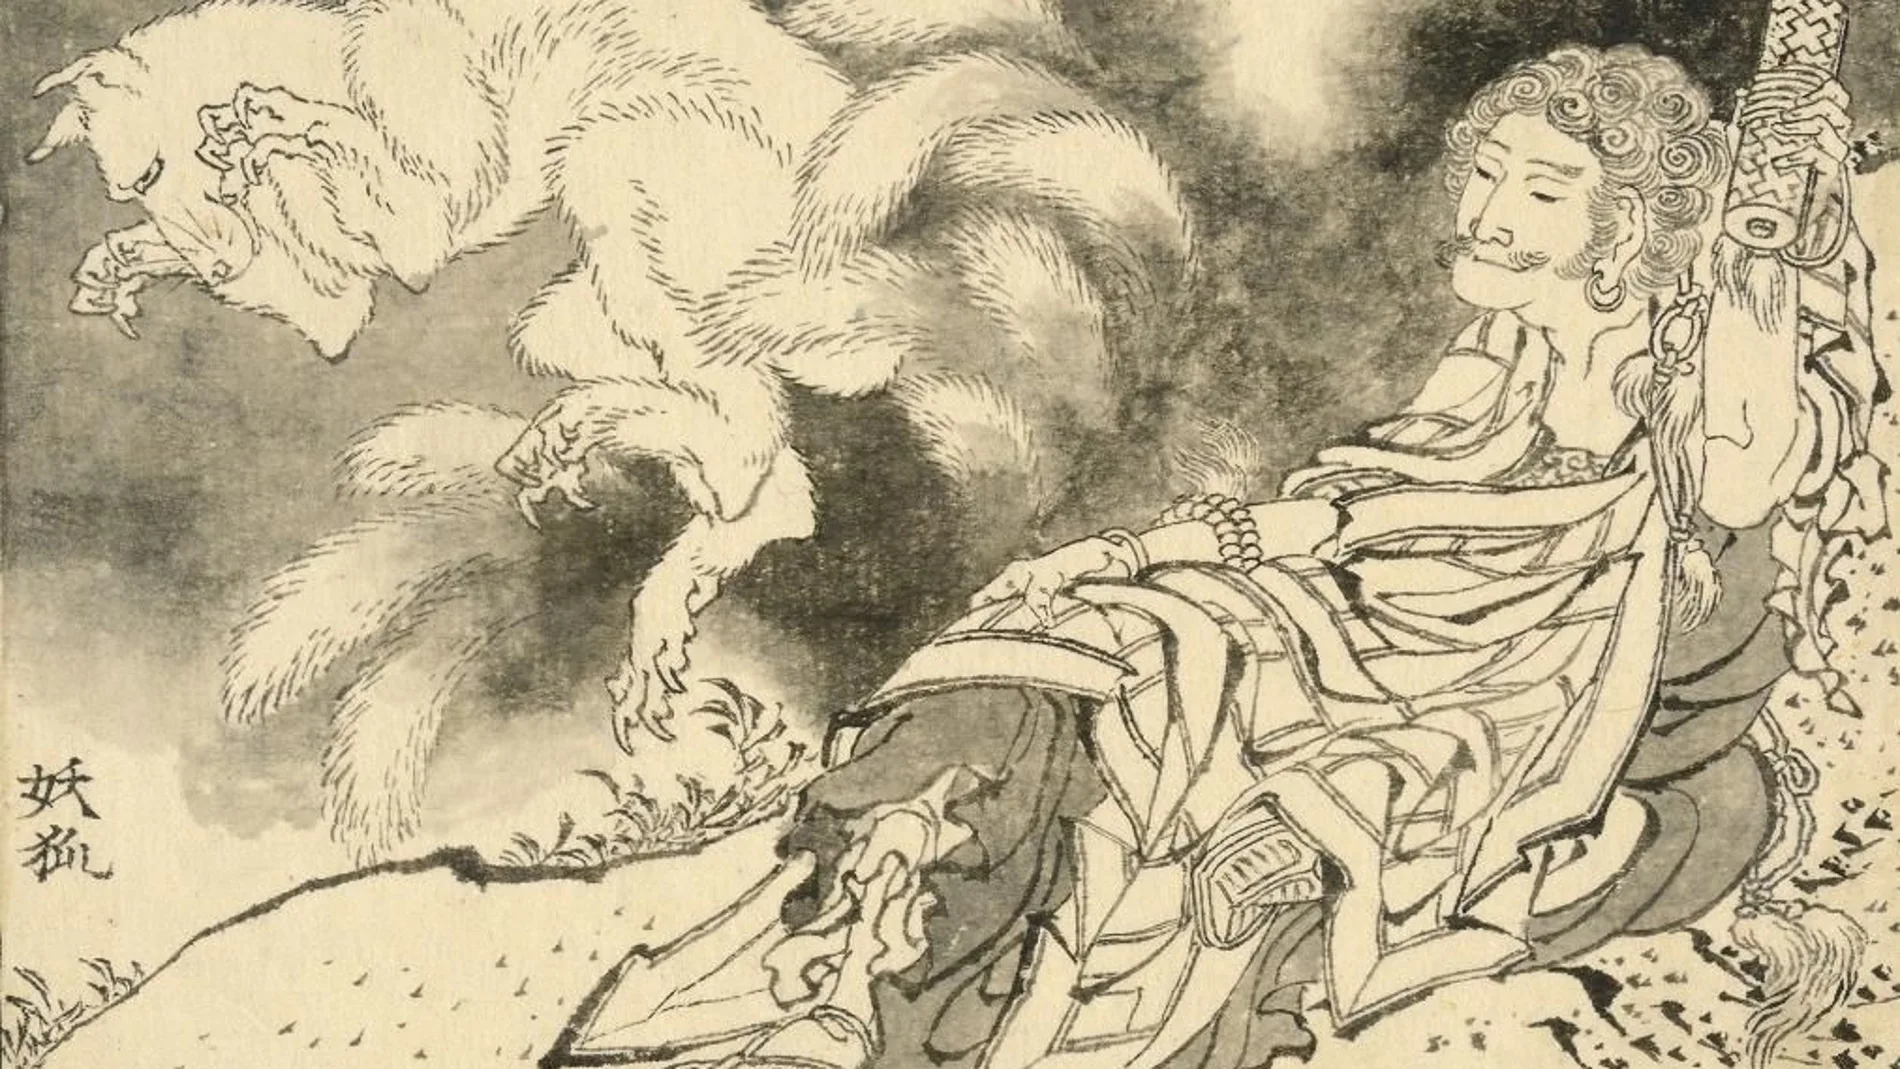 "Fumei Choja y el zorro espiritual de nueve colas", de Hakusai